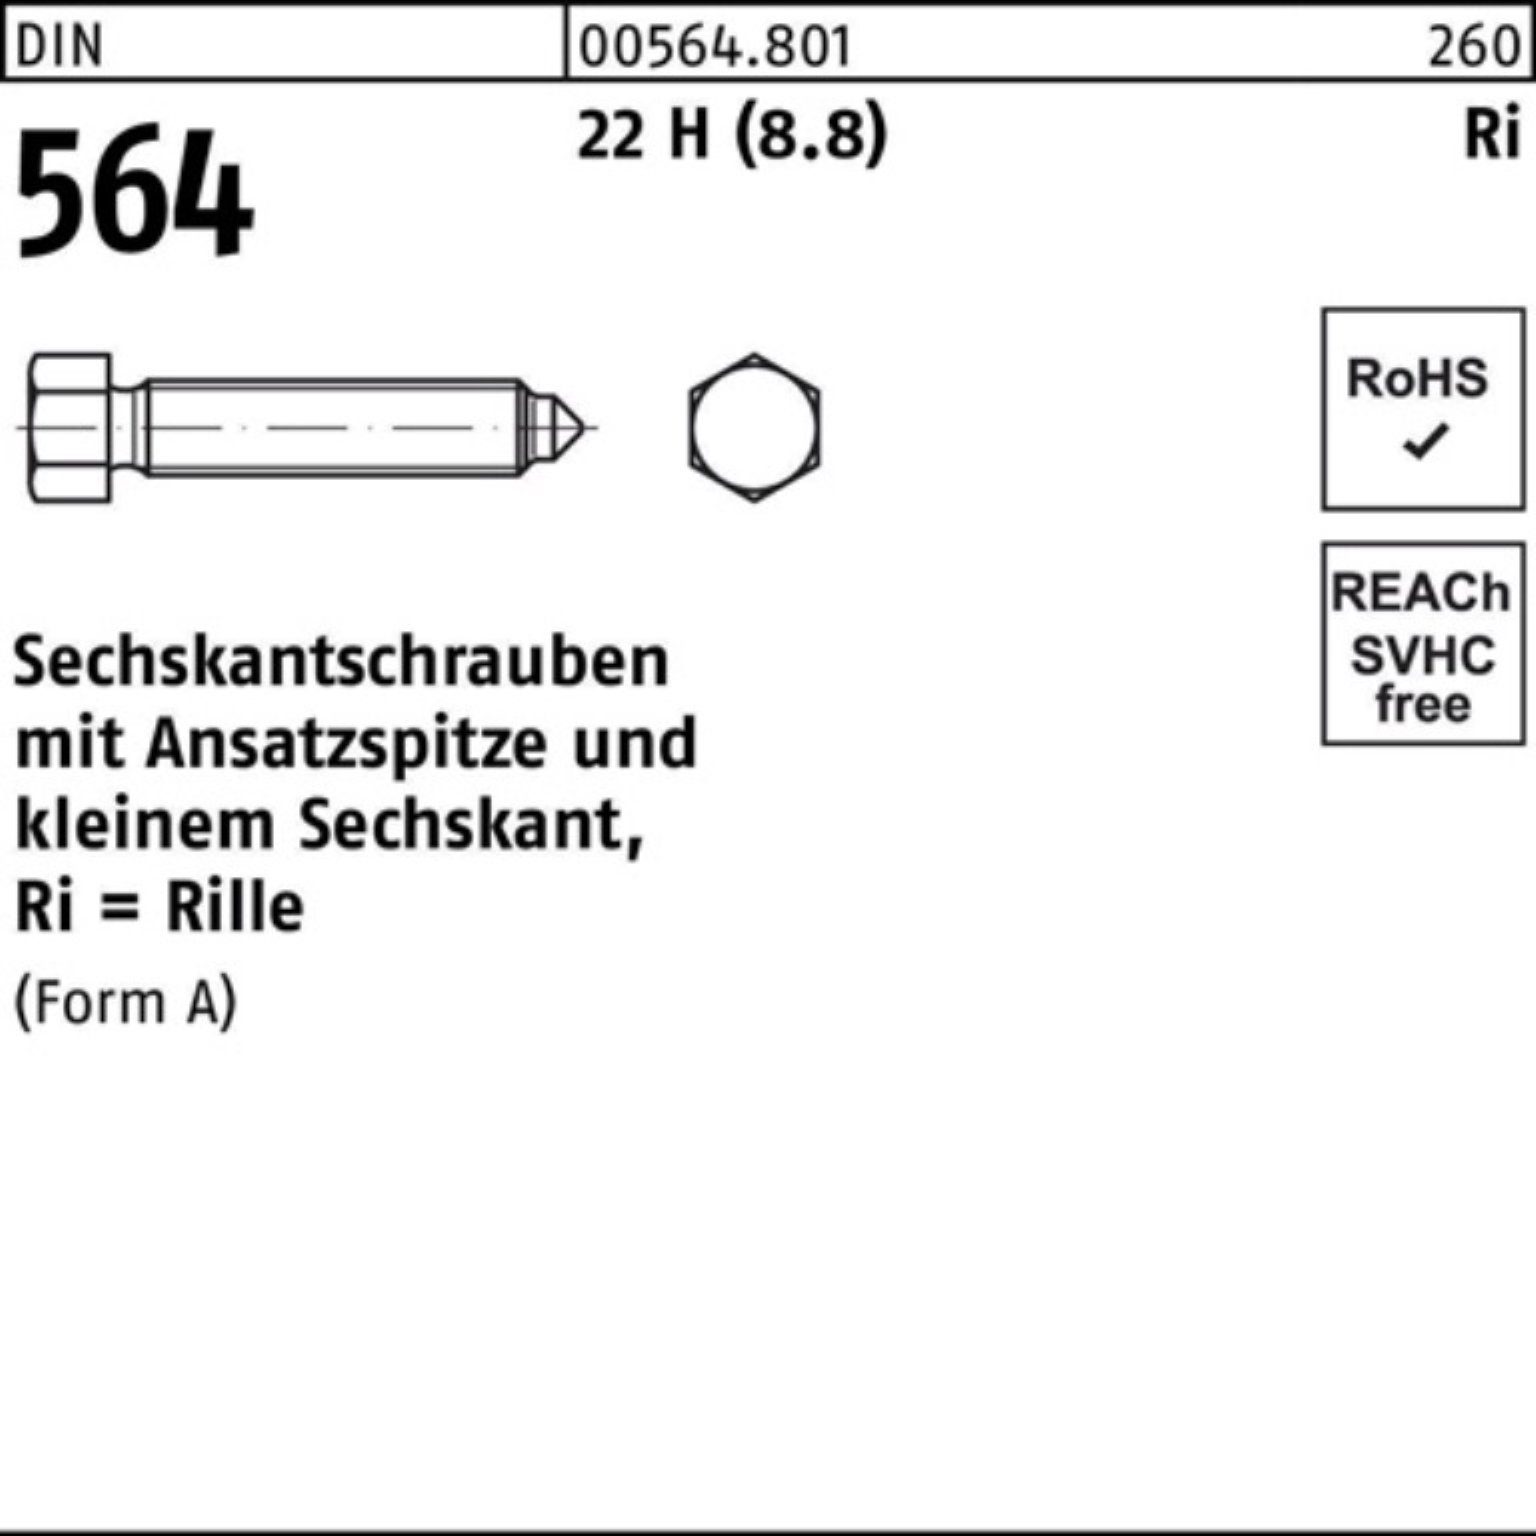 AM (8.8) H 50 Pack DIN Reyher Sechskantschraube 564 22 Ansatzspitze Sechskantschraube 16x 100er